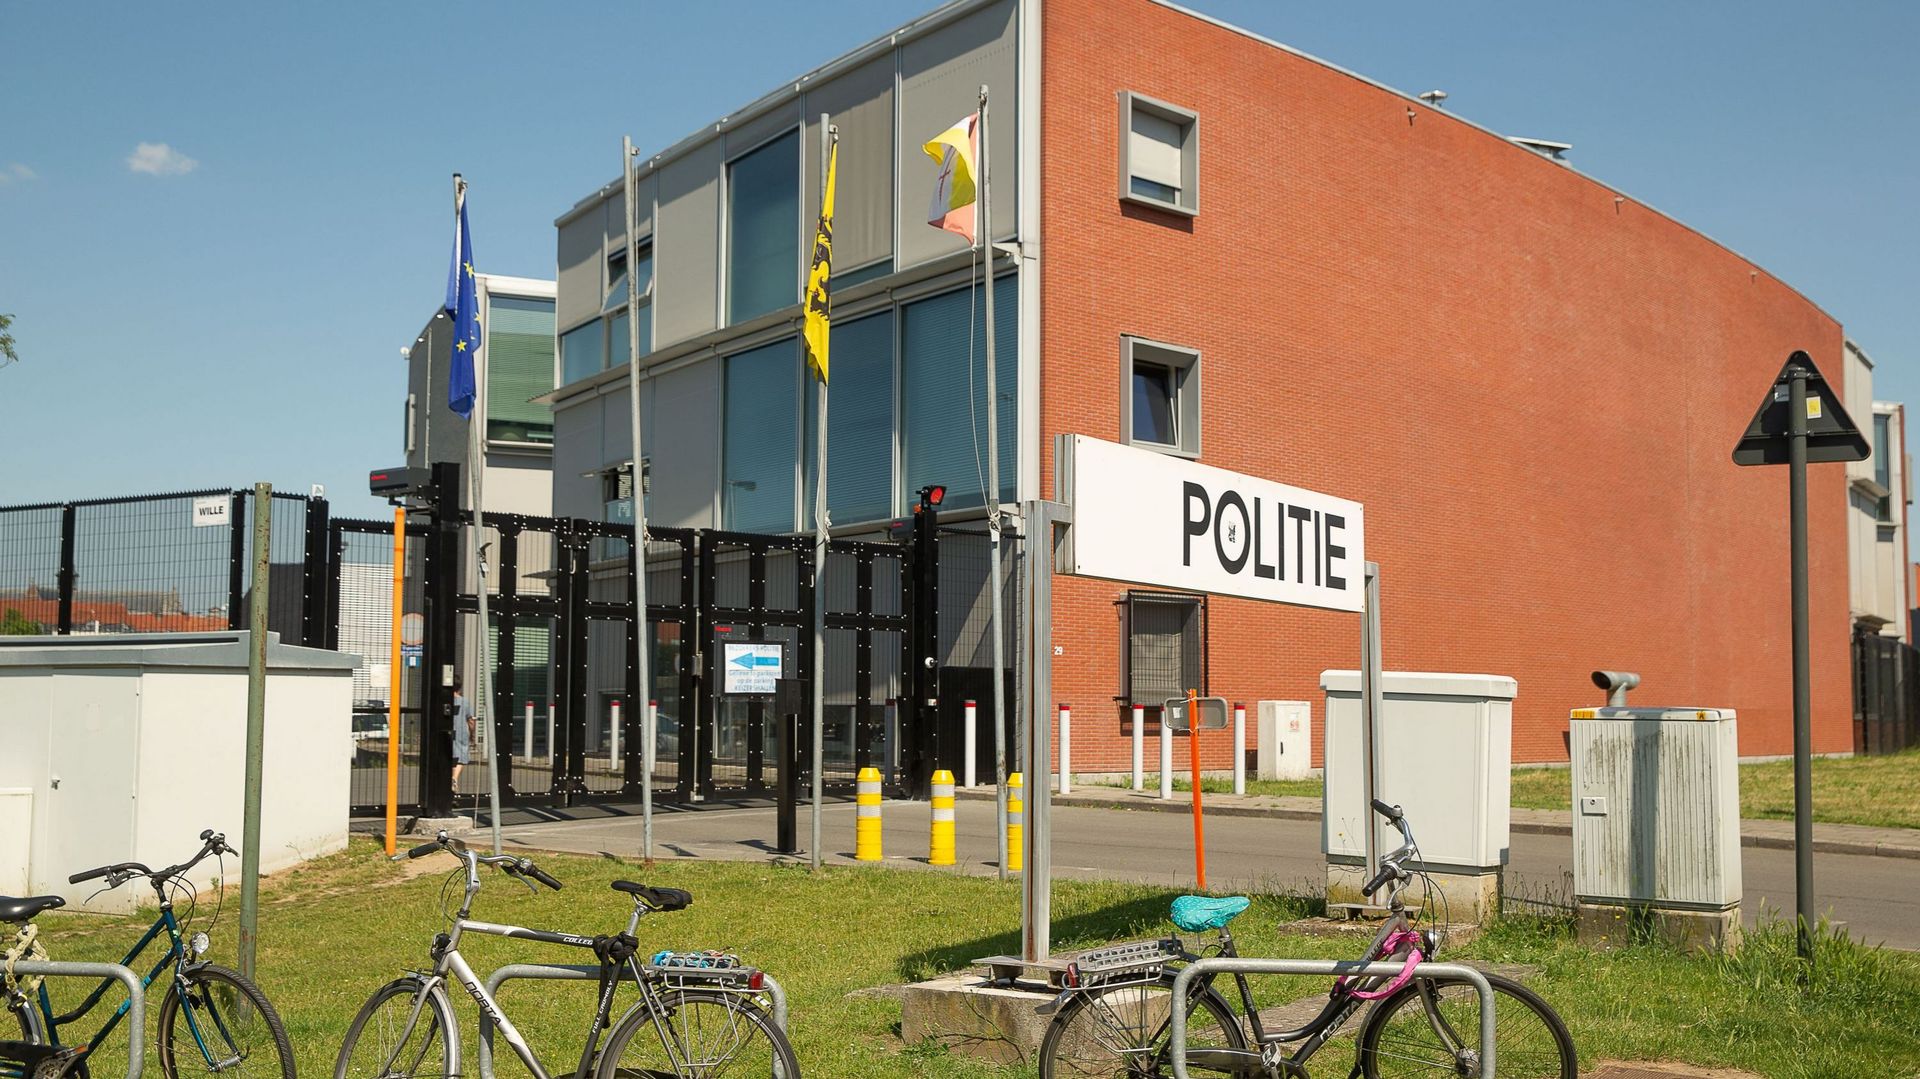 Le poste de police d'Alost, jeudi 25 juin 2020.  